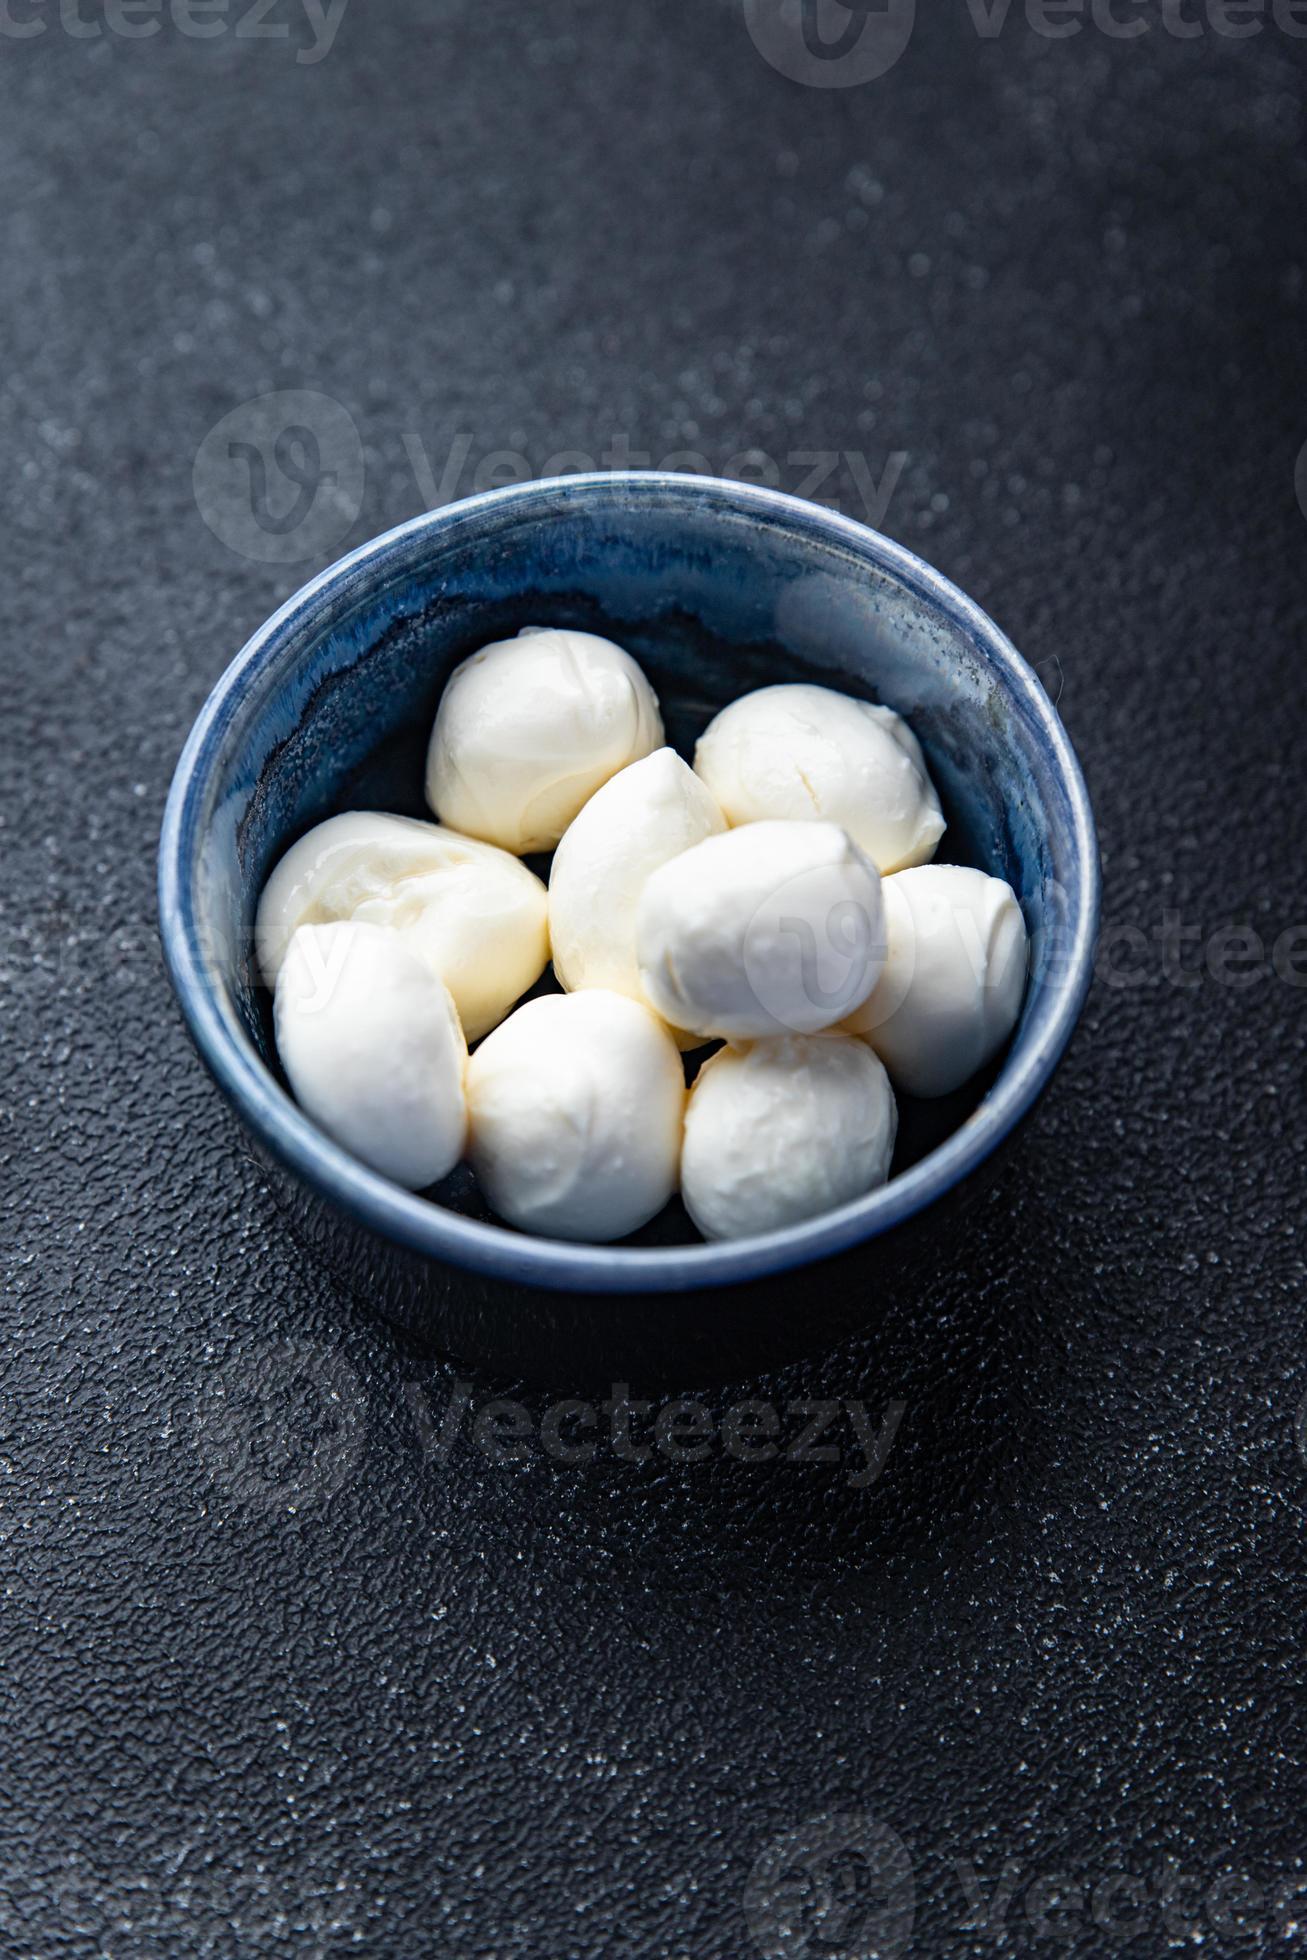 mozzarella kleine bällchen kuhmilch oder büffel, ziege gesunde mahlzeit essen snack auf dem tisch foto